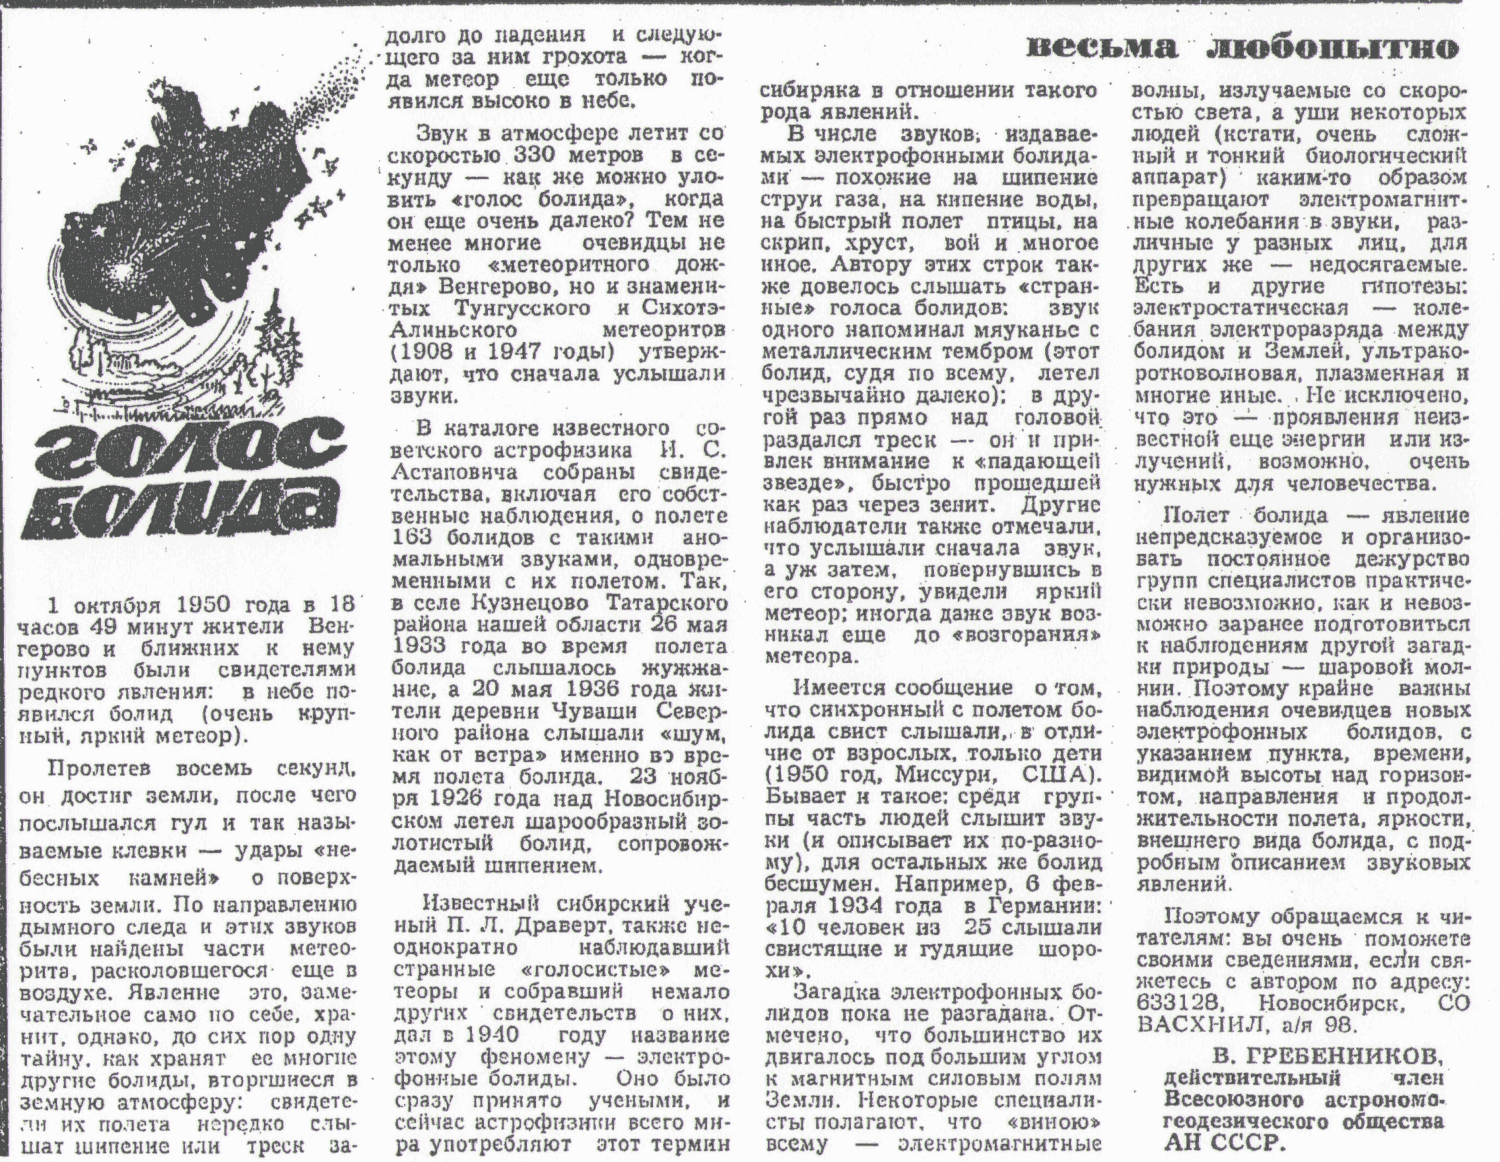 Голос болида. В.С. Гребенников. Вечерний Новосибирск, 16.11.1981. Фотокопия